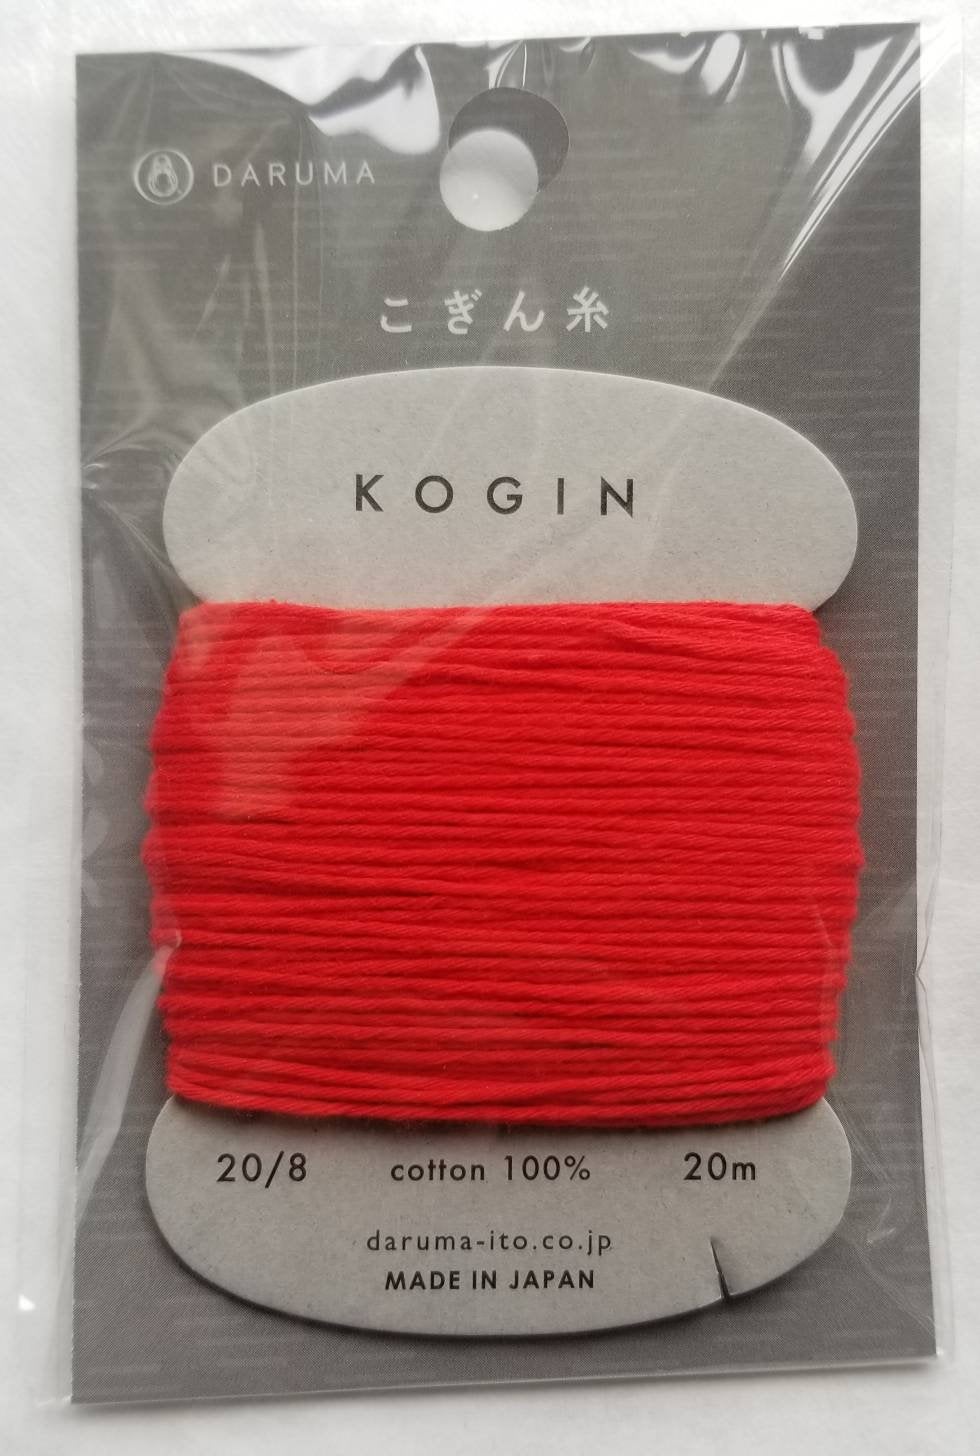 Daruma #4 RED Japanese Cotton KOGIN thread 20 meter skein 20/8